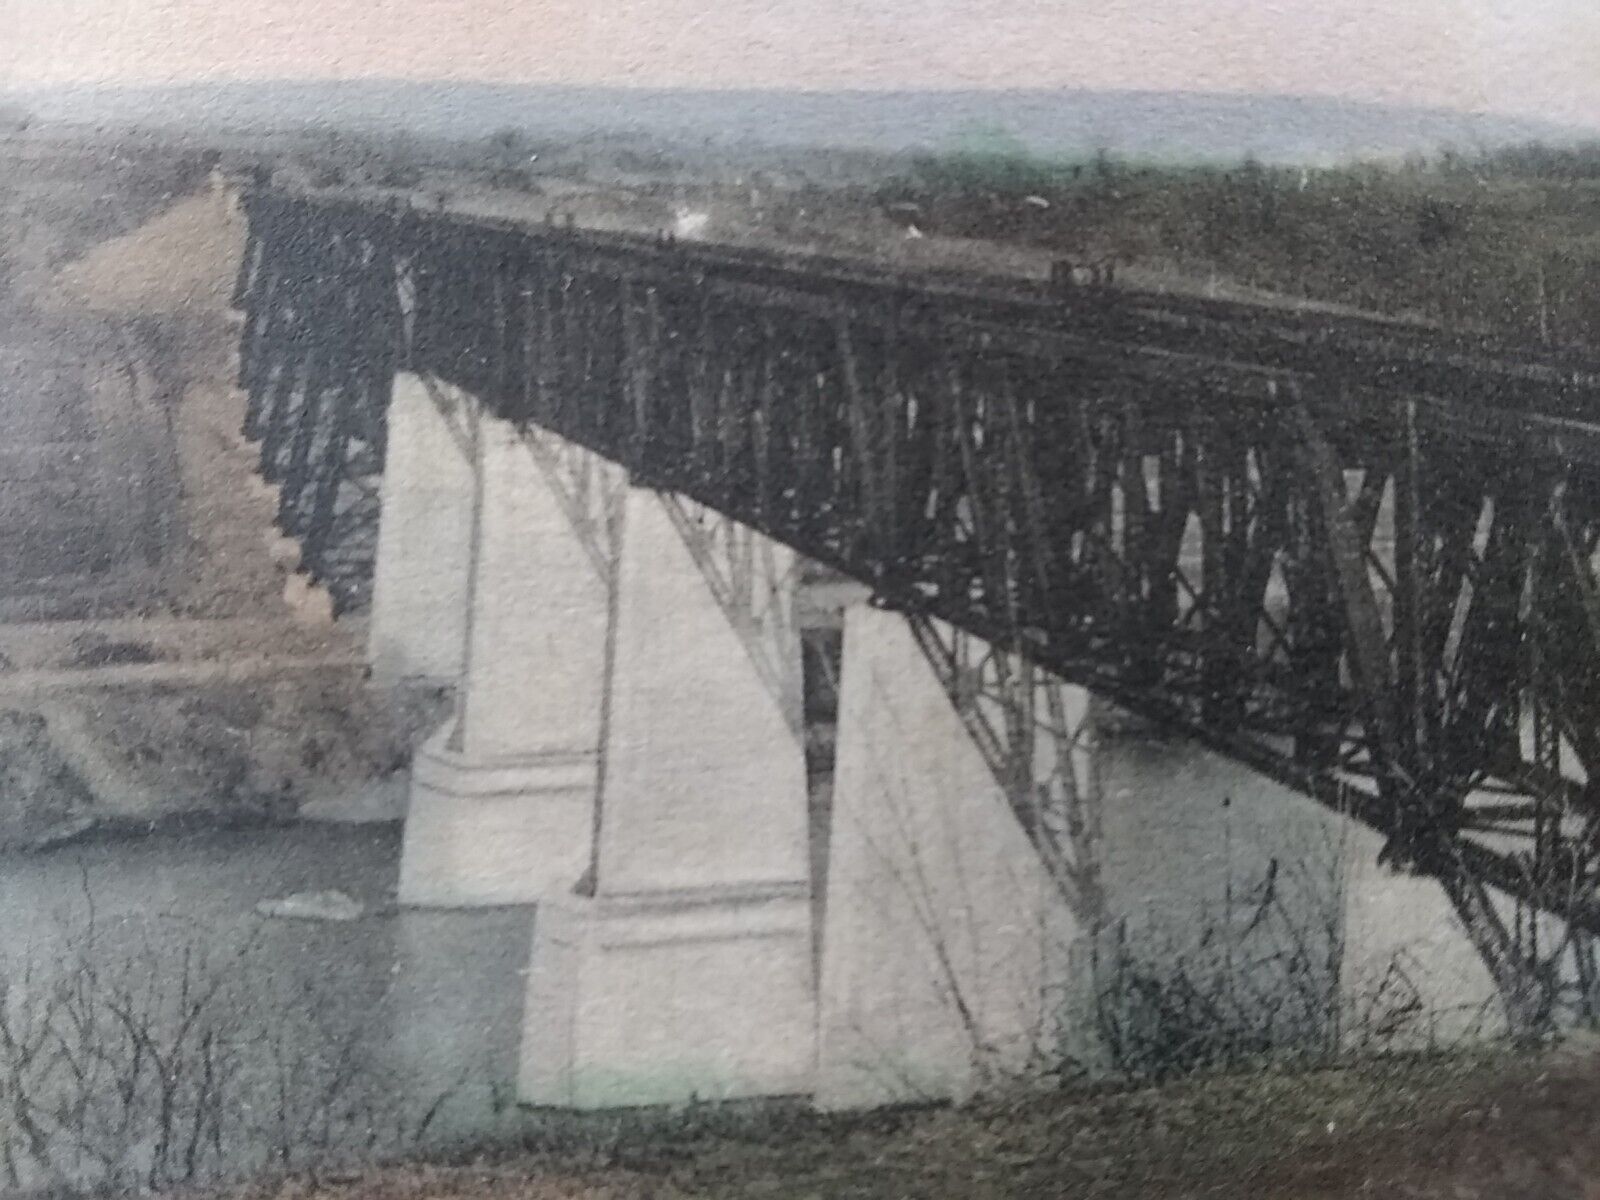 Vtg postcard. The N. & W. Rail road bridge, Shepherdstown, W. Va. (A19)